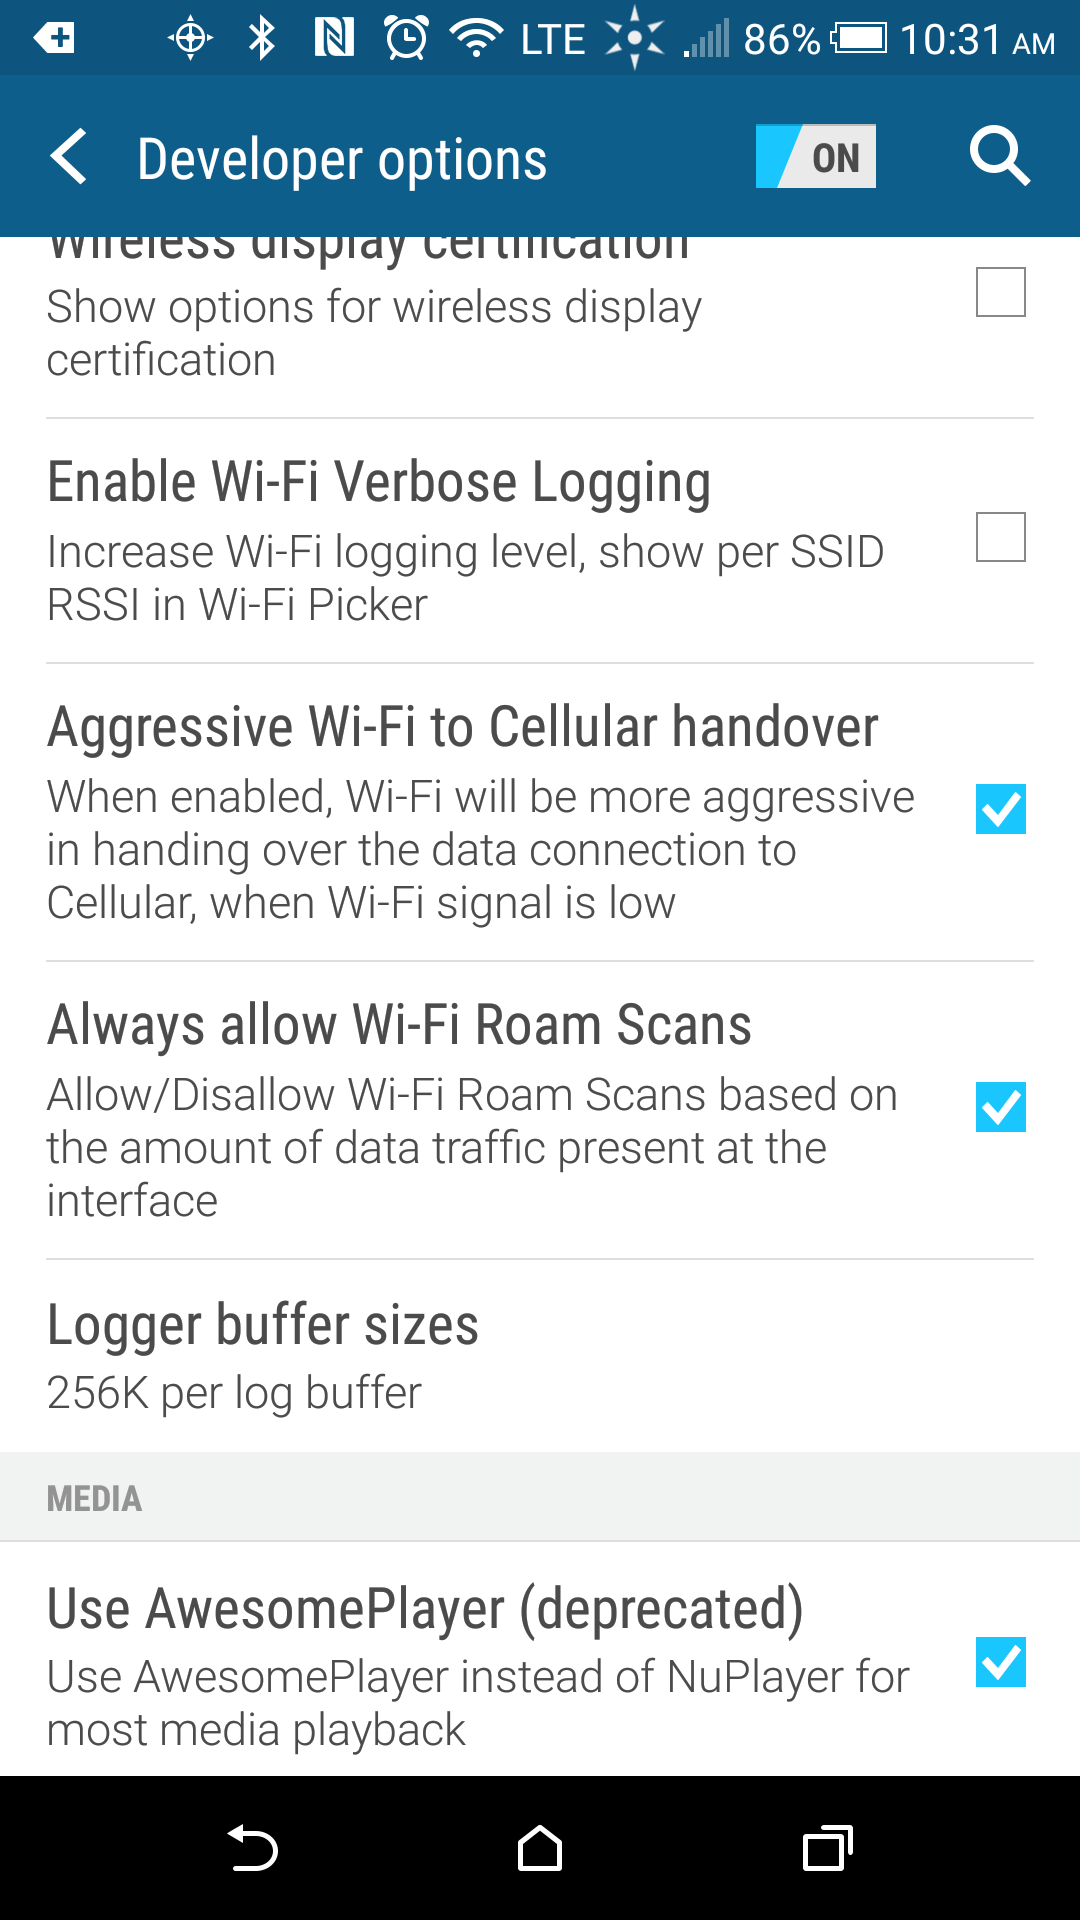 Aggressive Wi-Fi to Cellular handover